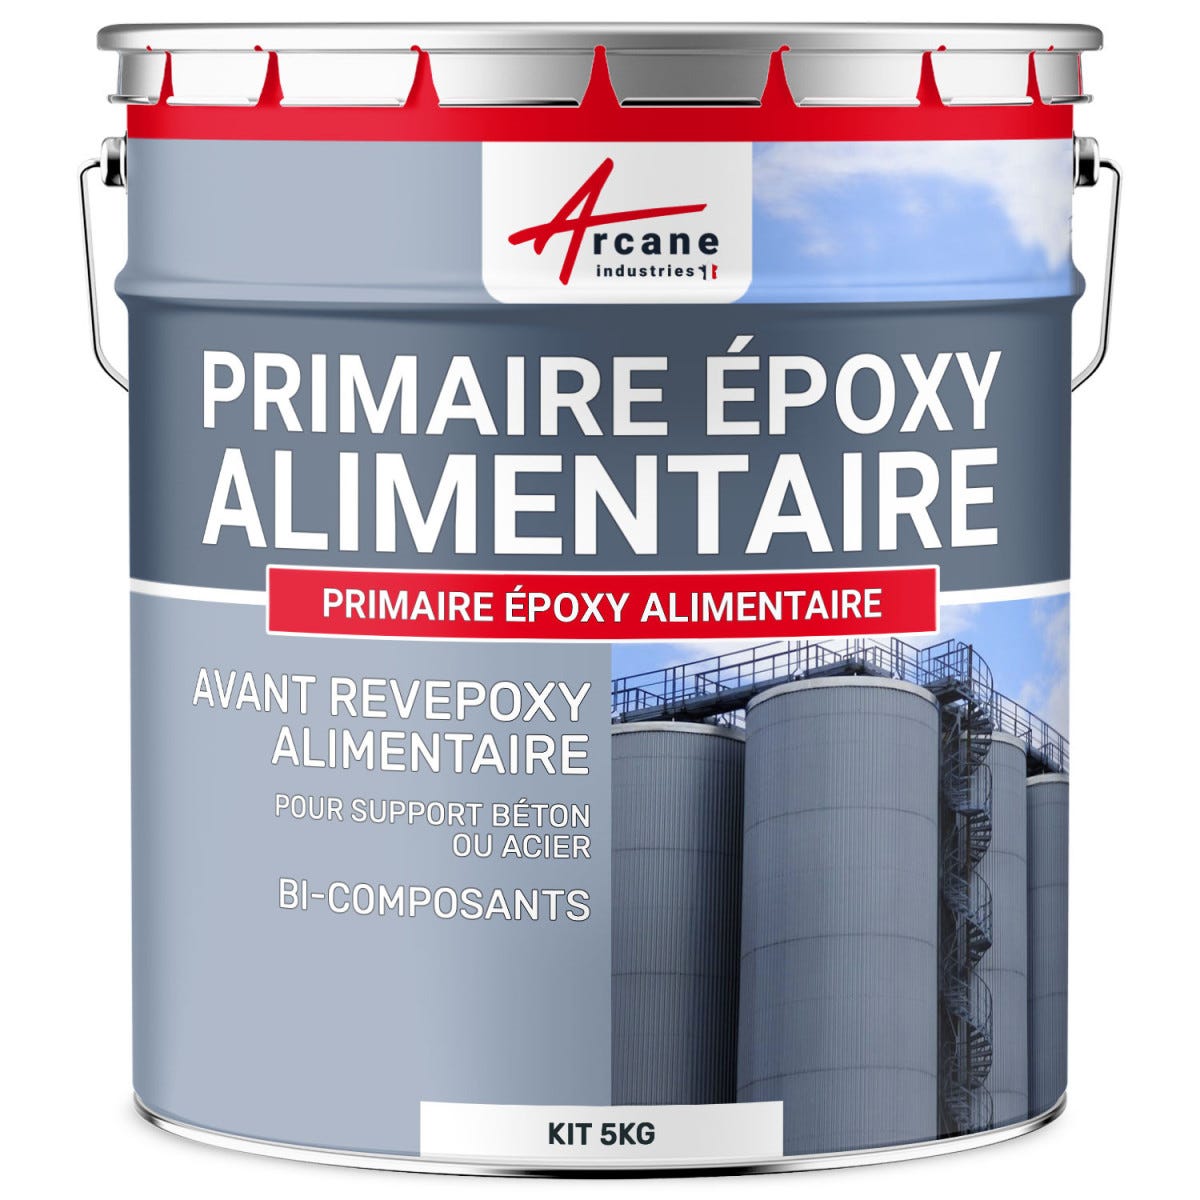 Primaire Epoxy pour contact Alimentaire - PRIMAIRE EPOXY ALIMENTAIRE - 5 kg - - ARCANE INDUSTRIES 0